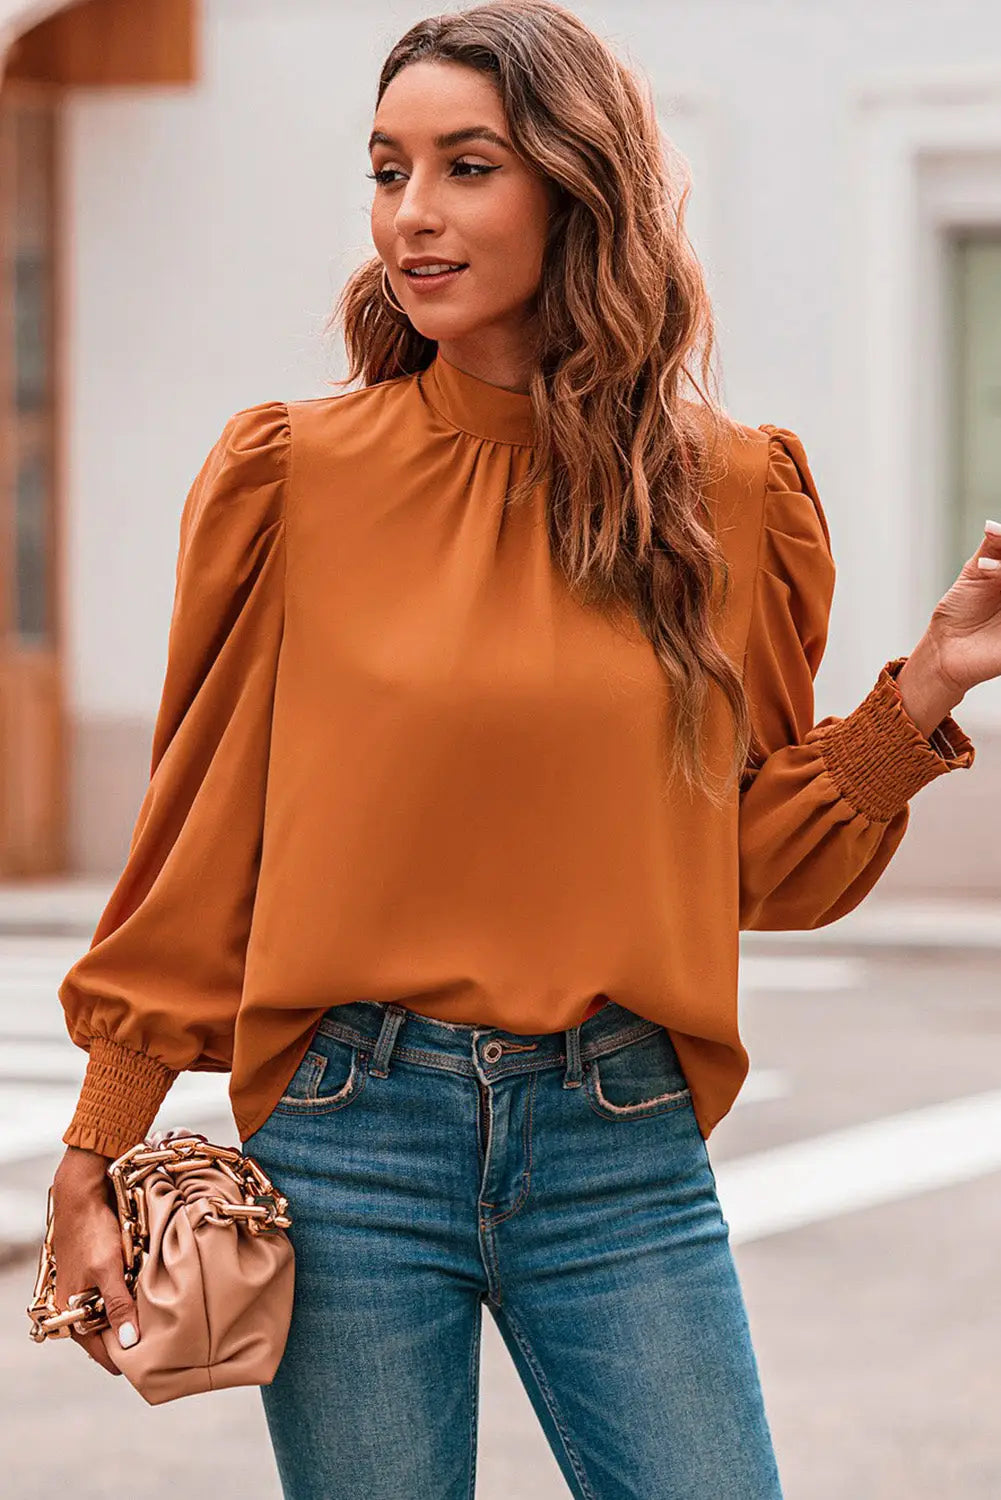 Orange long bubble sleeve mock neck chiffon blouse - tops